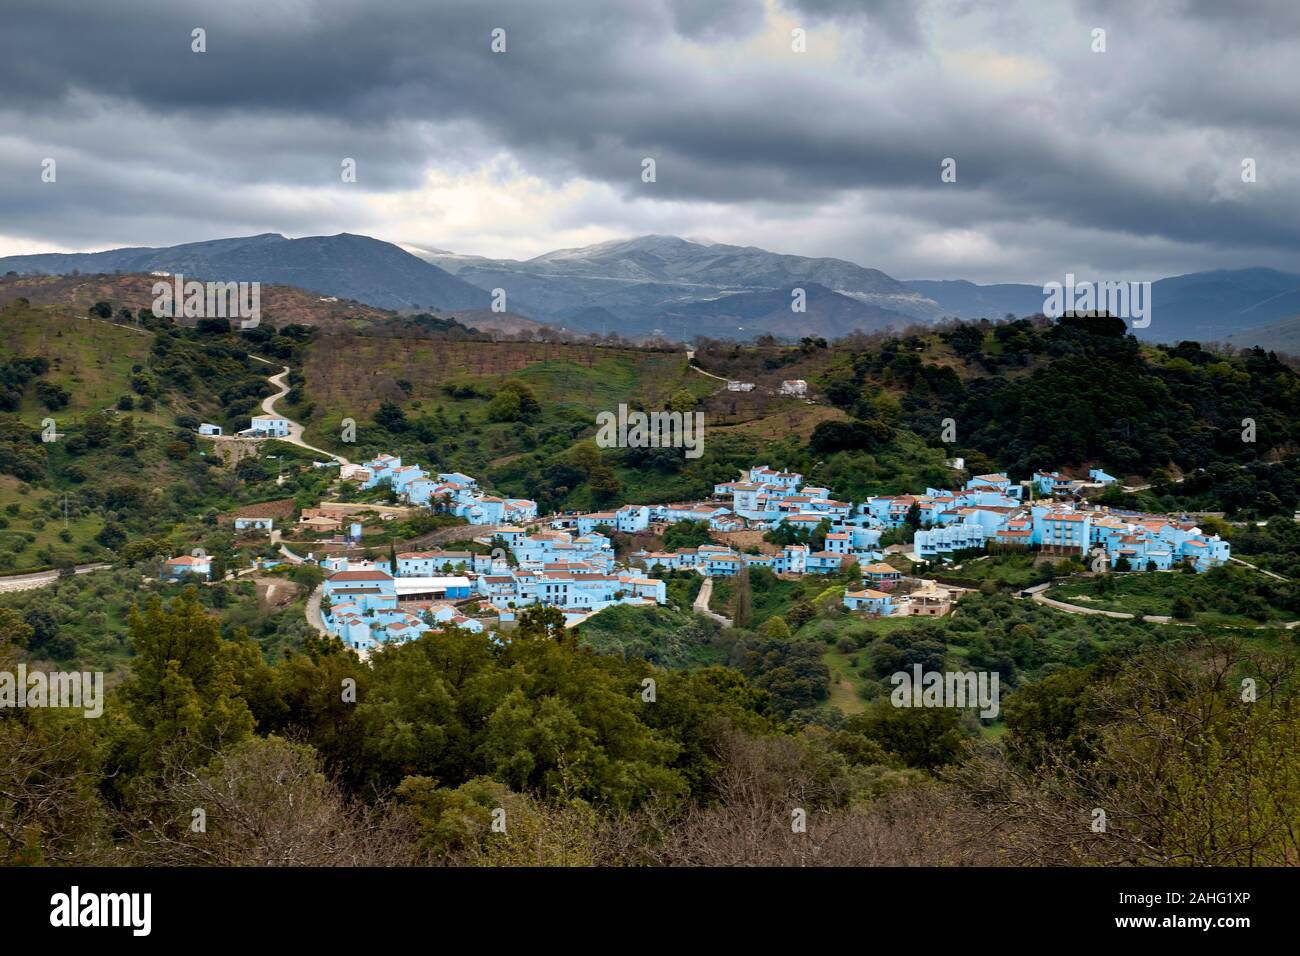 Das Dorf von Juzcar, Andalusien, Spanien, blau lackiert für Dreharbeiten ein Smurf Film Stockfoto